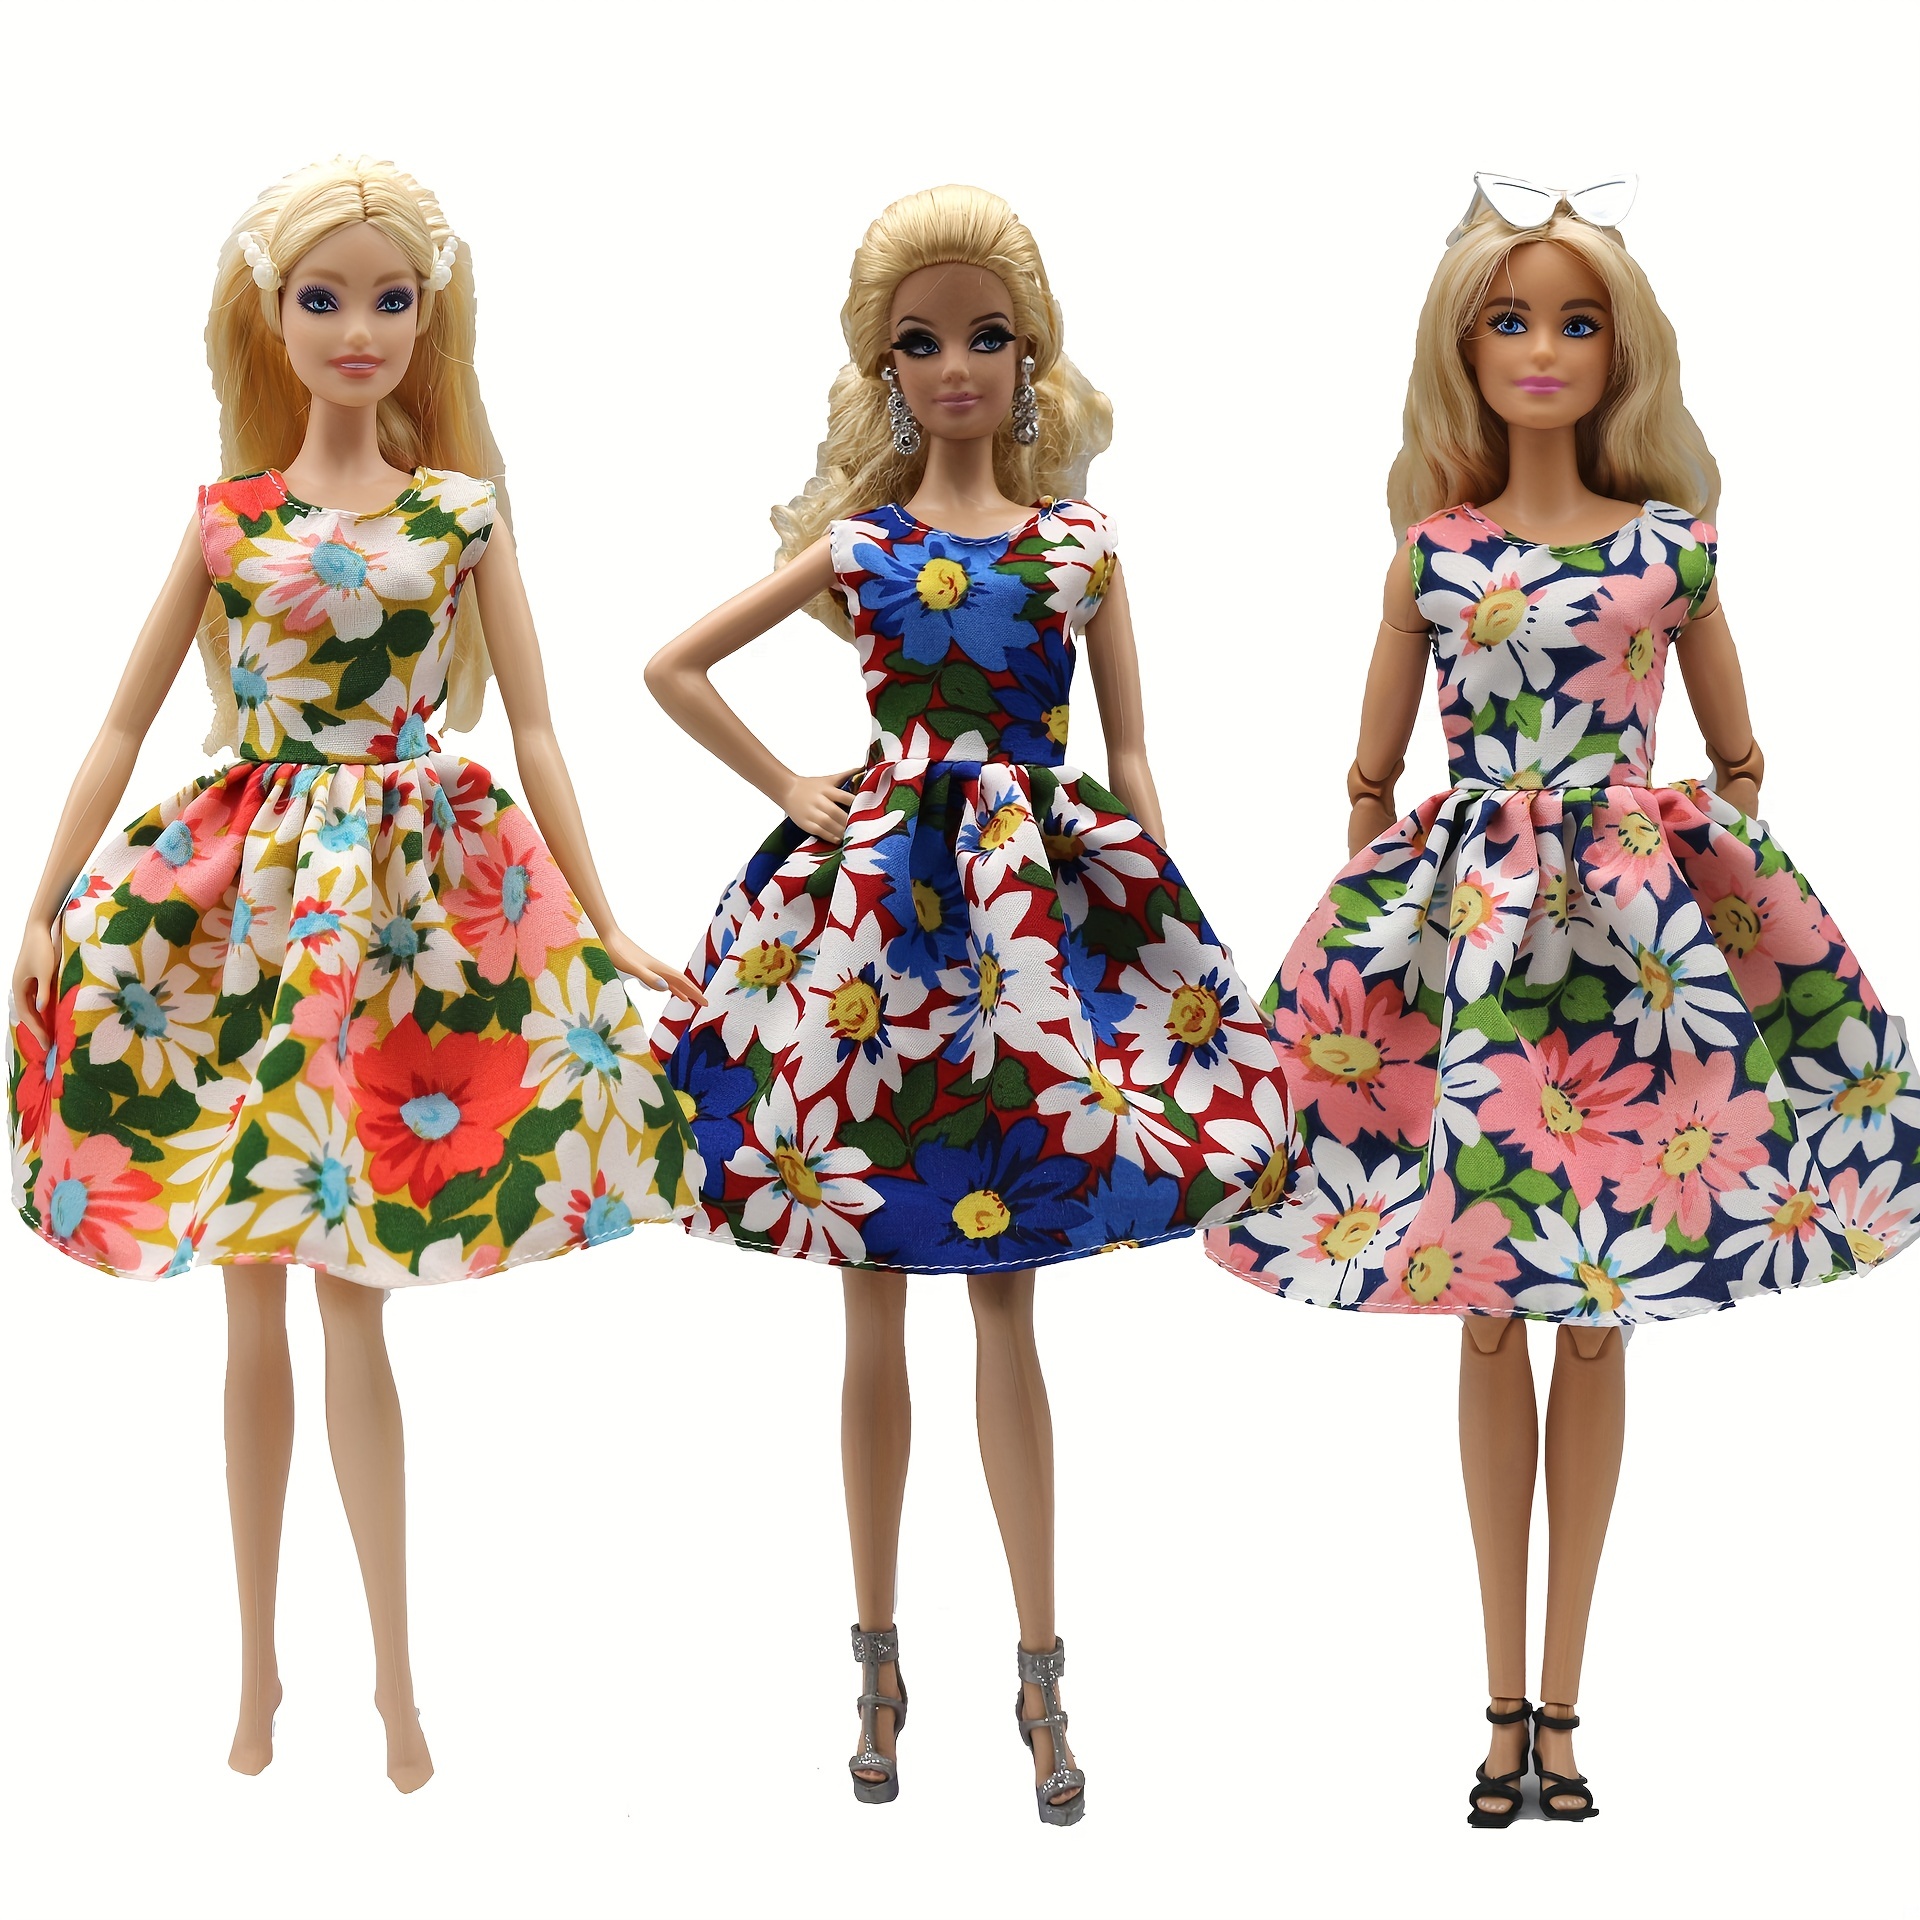 Kit Brinquedo Jogo Da Moda Boneca Com Roupas E Acessórios Fashion 9 Pçs em  Promoção na Americanas